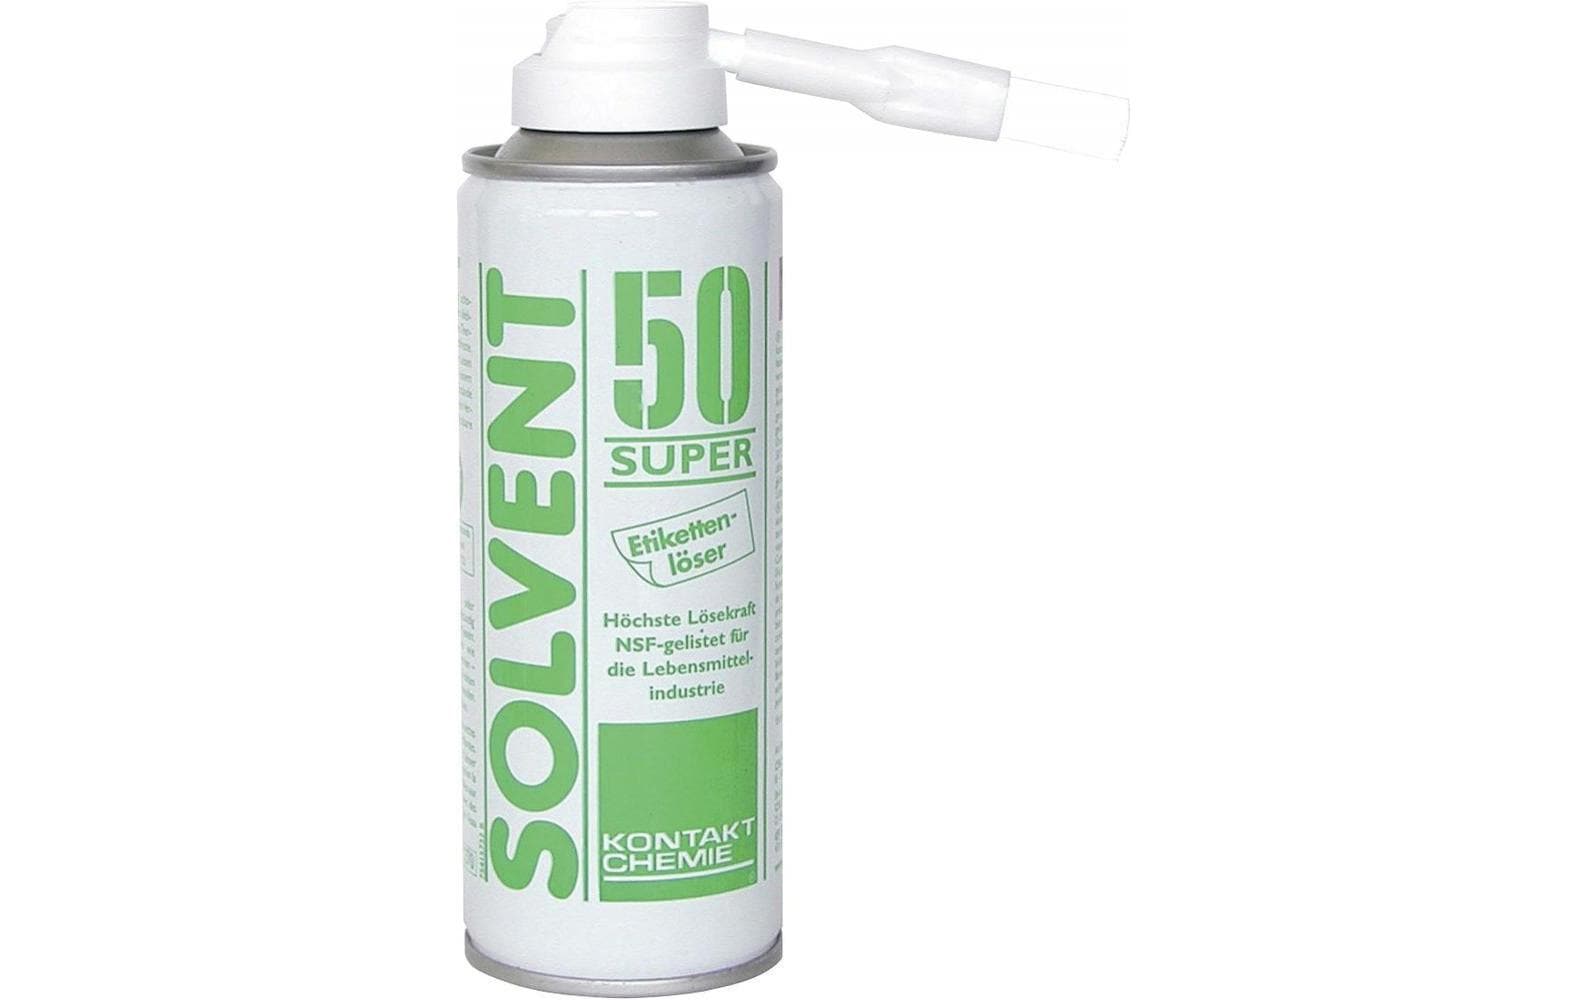 Kontakt Chemie Etikettenlöser Solvent 50 Super 200 ml